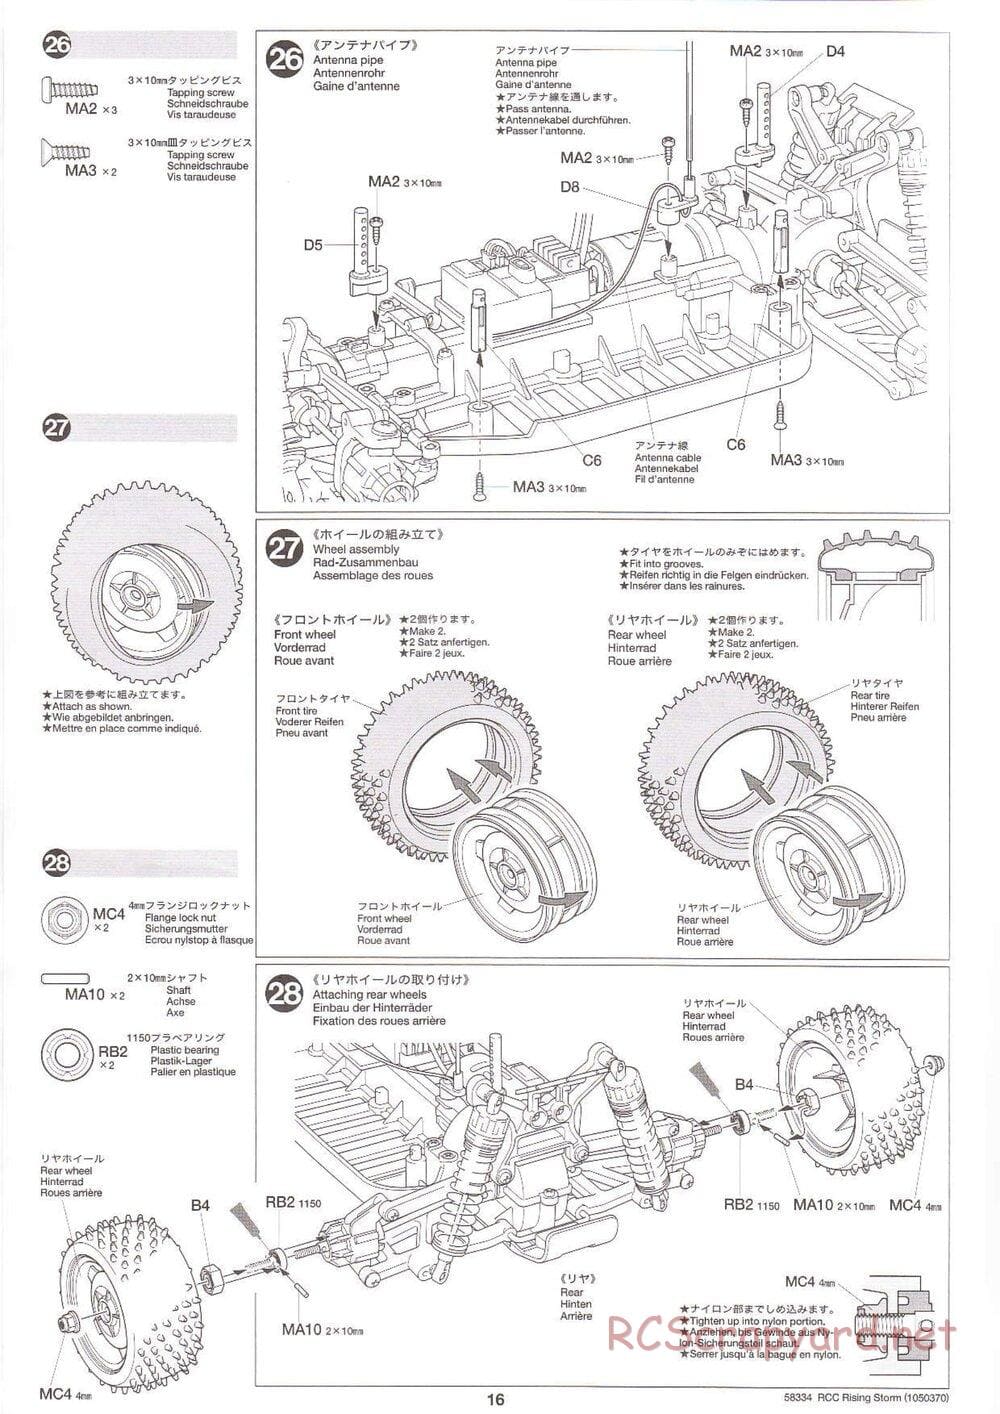 Tamiya - Rising Storm Chassis - Manual - Page 16